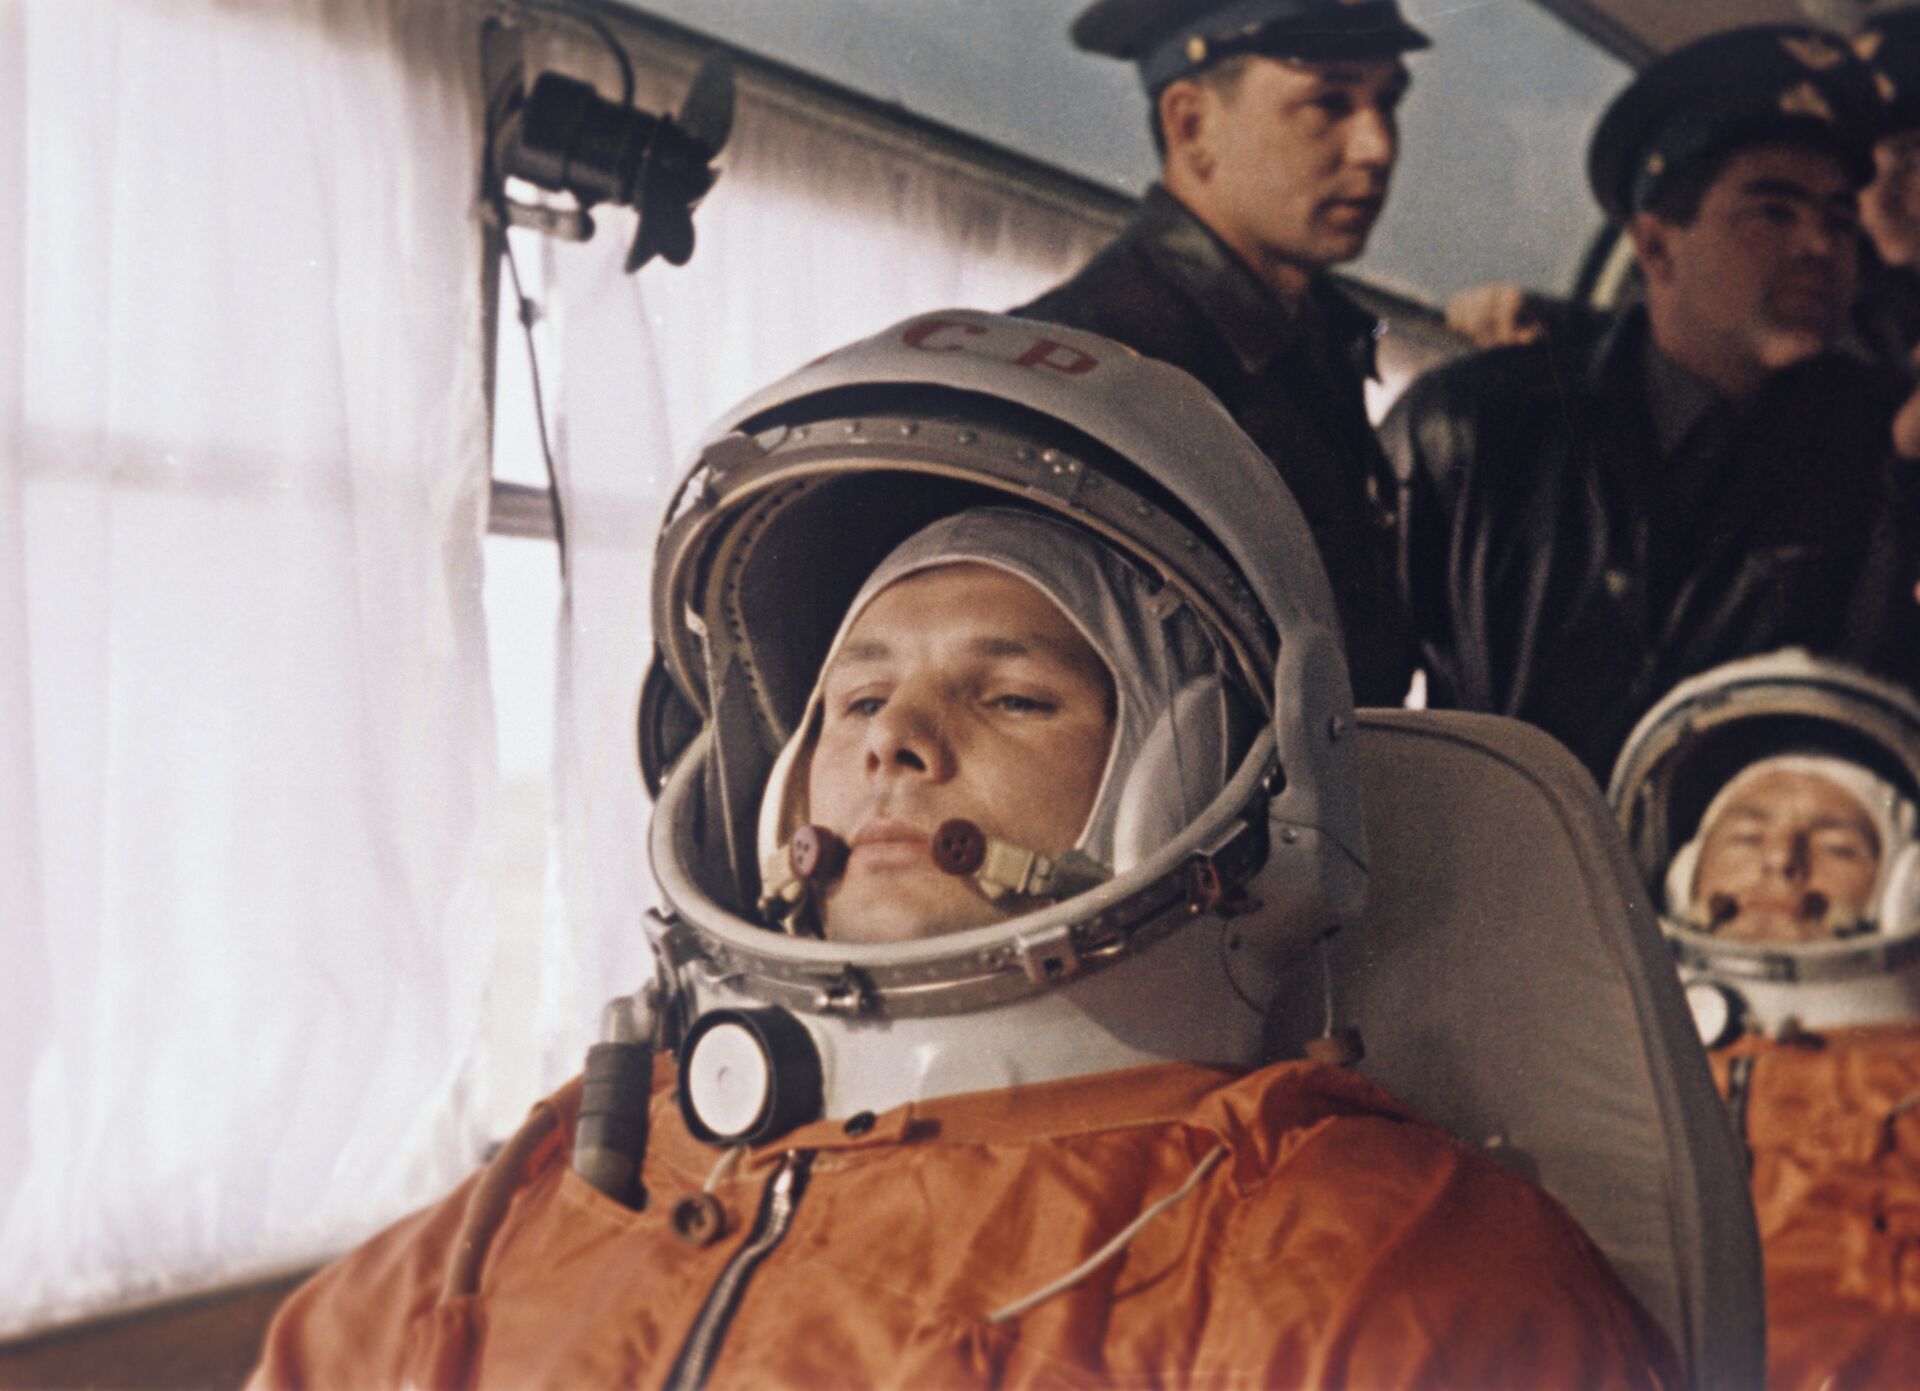 1920x1391, 224 Kb / Юрий Гагарин, 12 апреля, день космонавтики, скафандр, шлем, вентилятор, СССР, восток, космос, ракета, старт, пуск, поехали, юрапрости